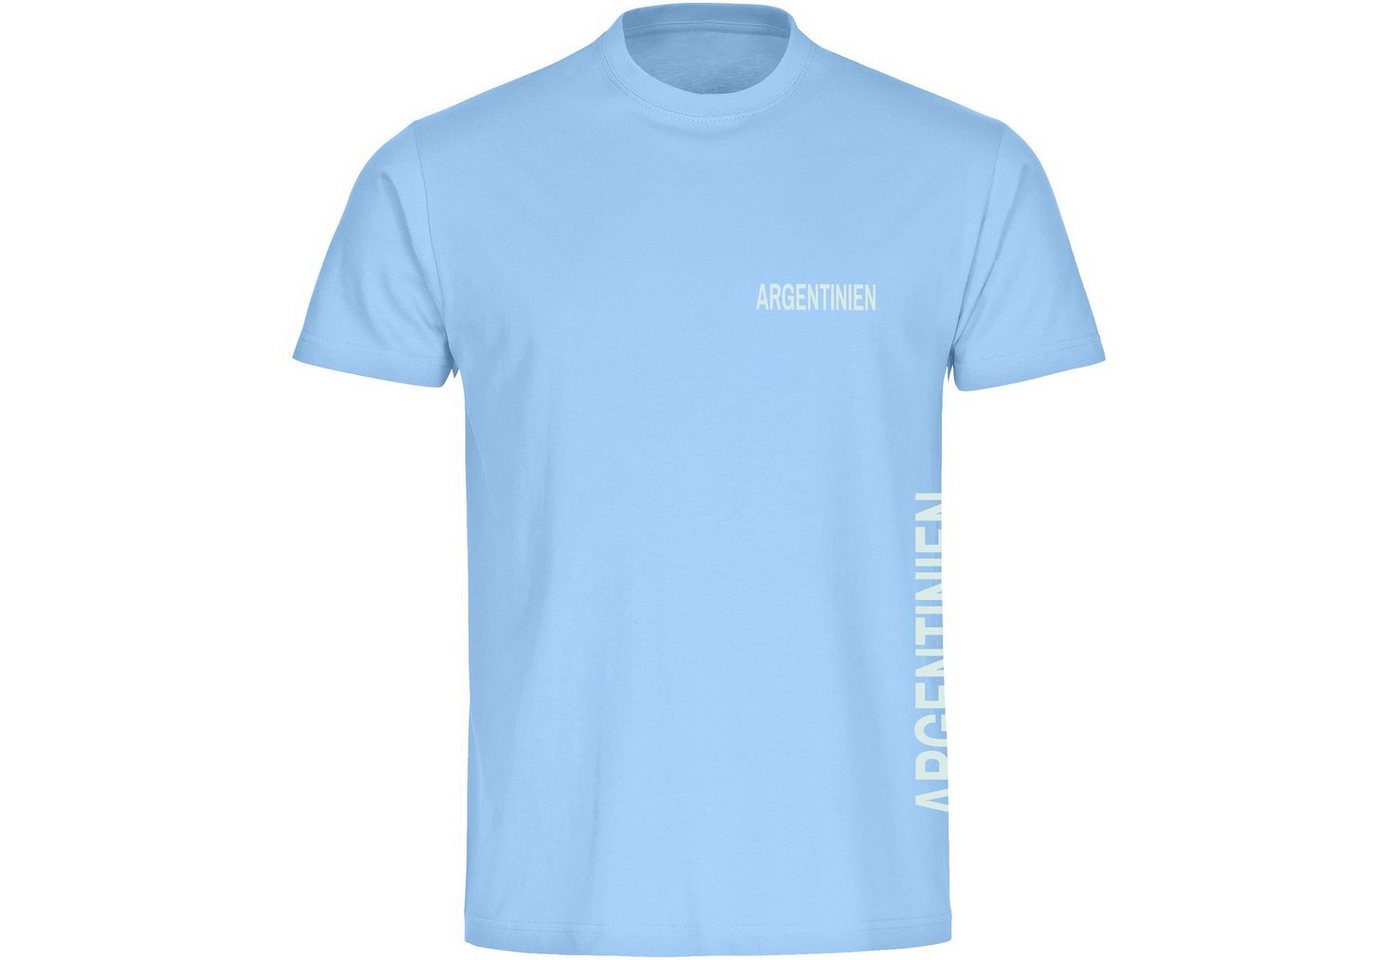 multifanshop T-Shirt Herren Argentinien - Brust & Seite - Männer von multifanshop